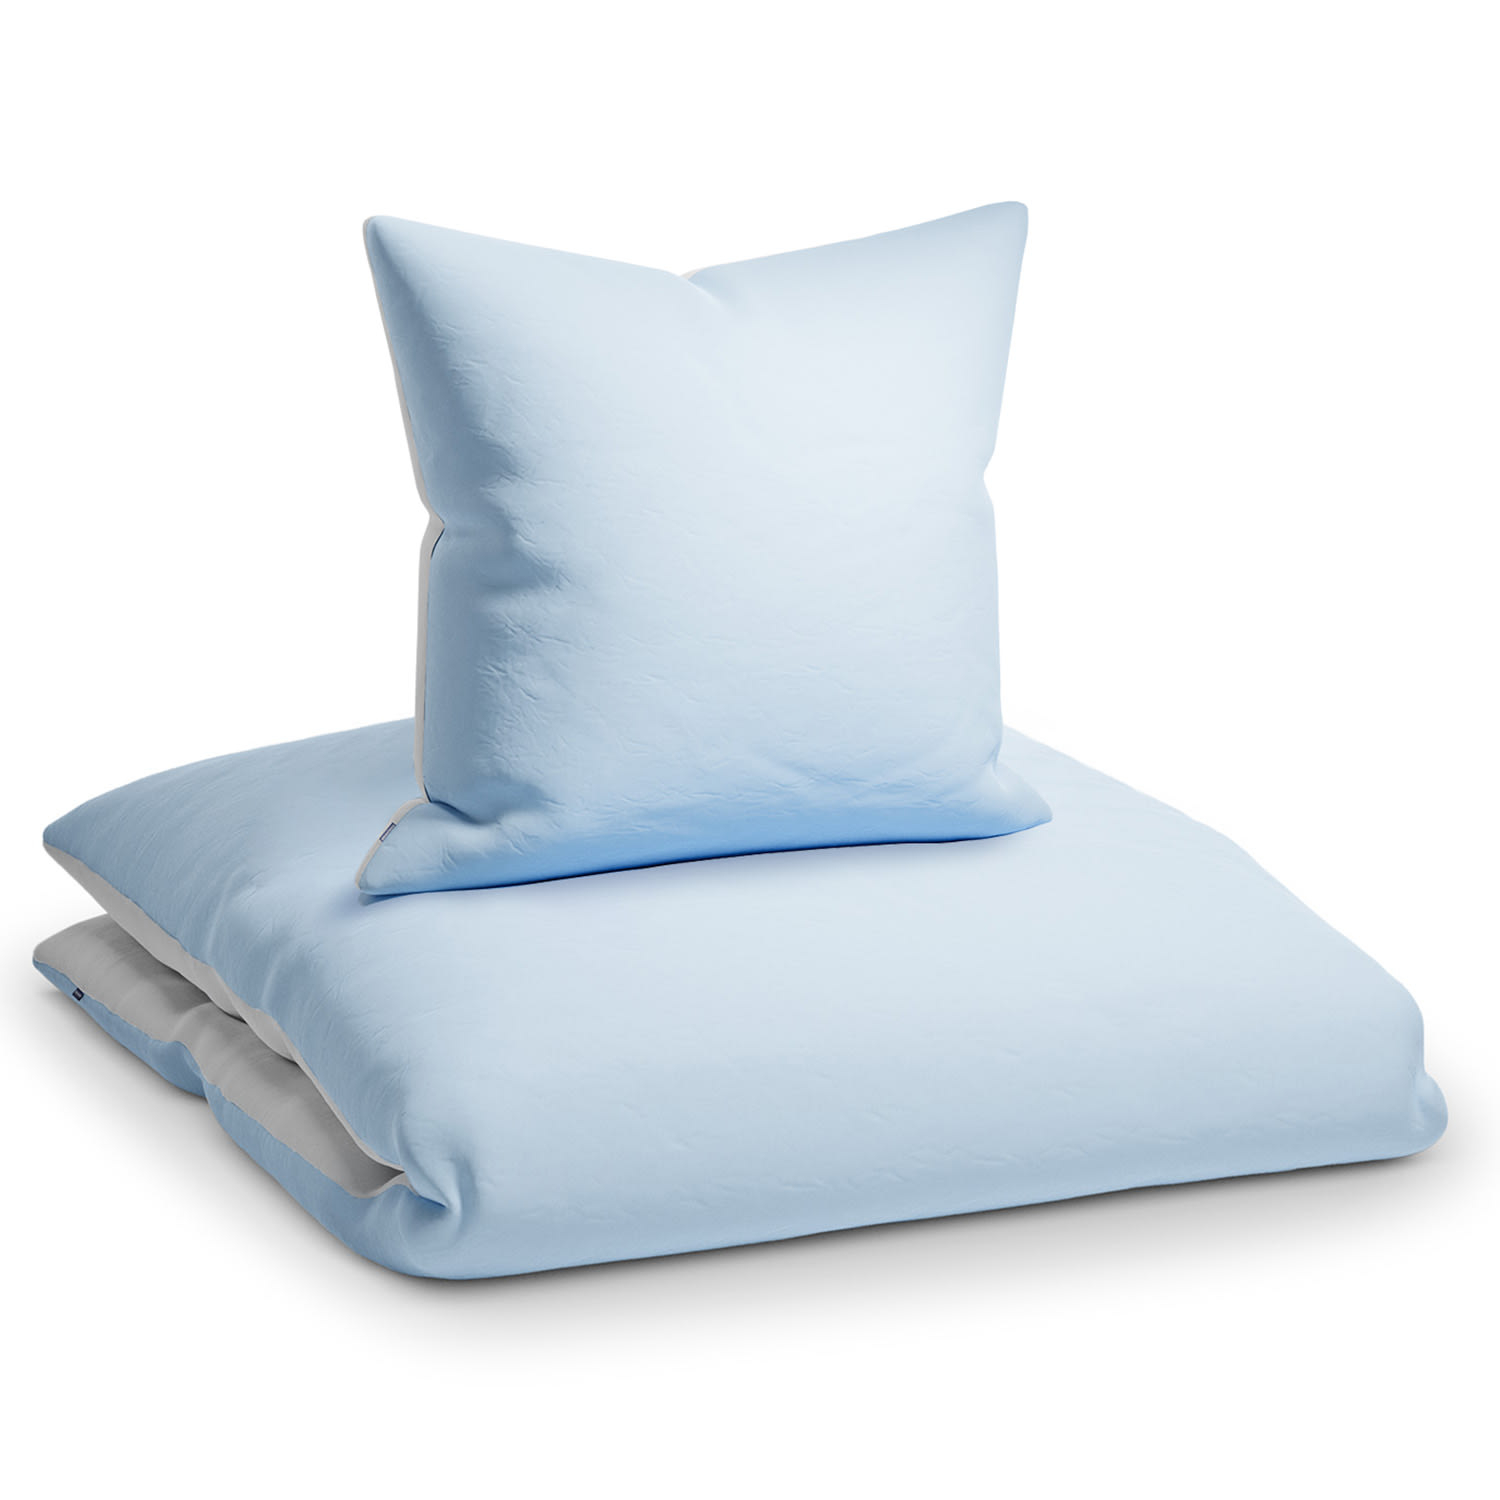 Sleepwise Soft Wonder-Edition, pościel, 135 x 200 cm, niebiesko-szara/biała